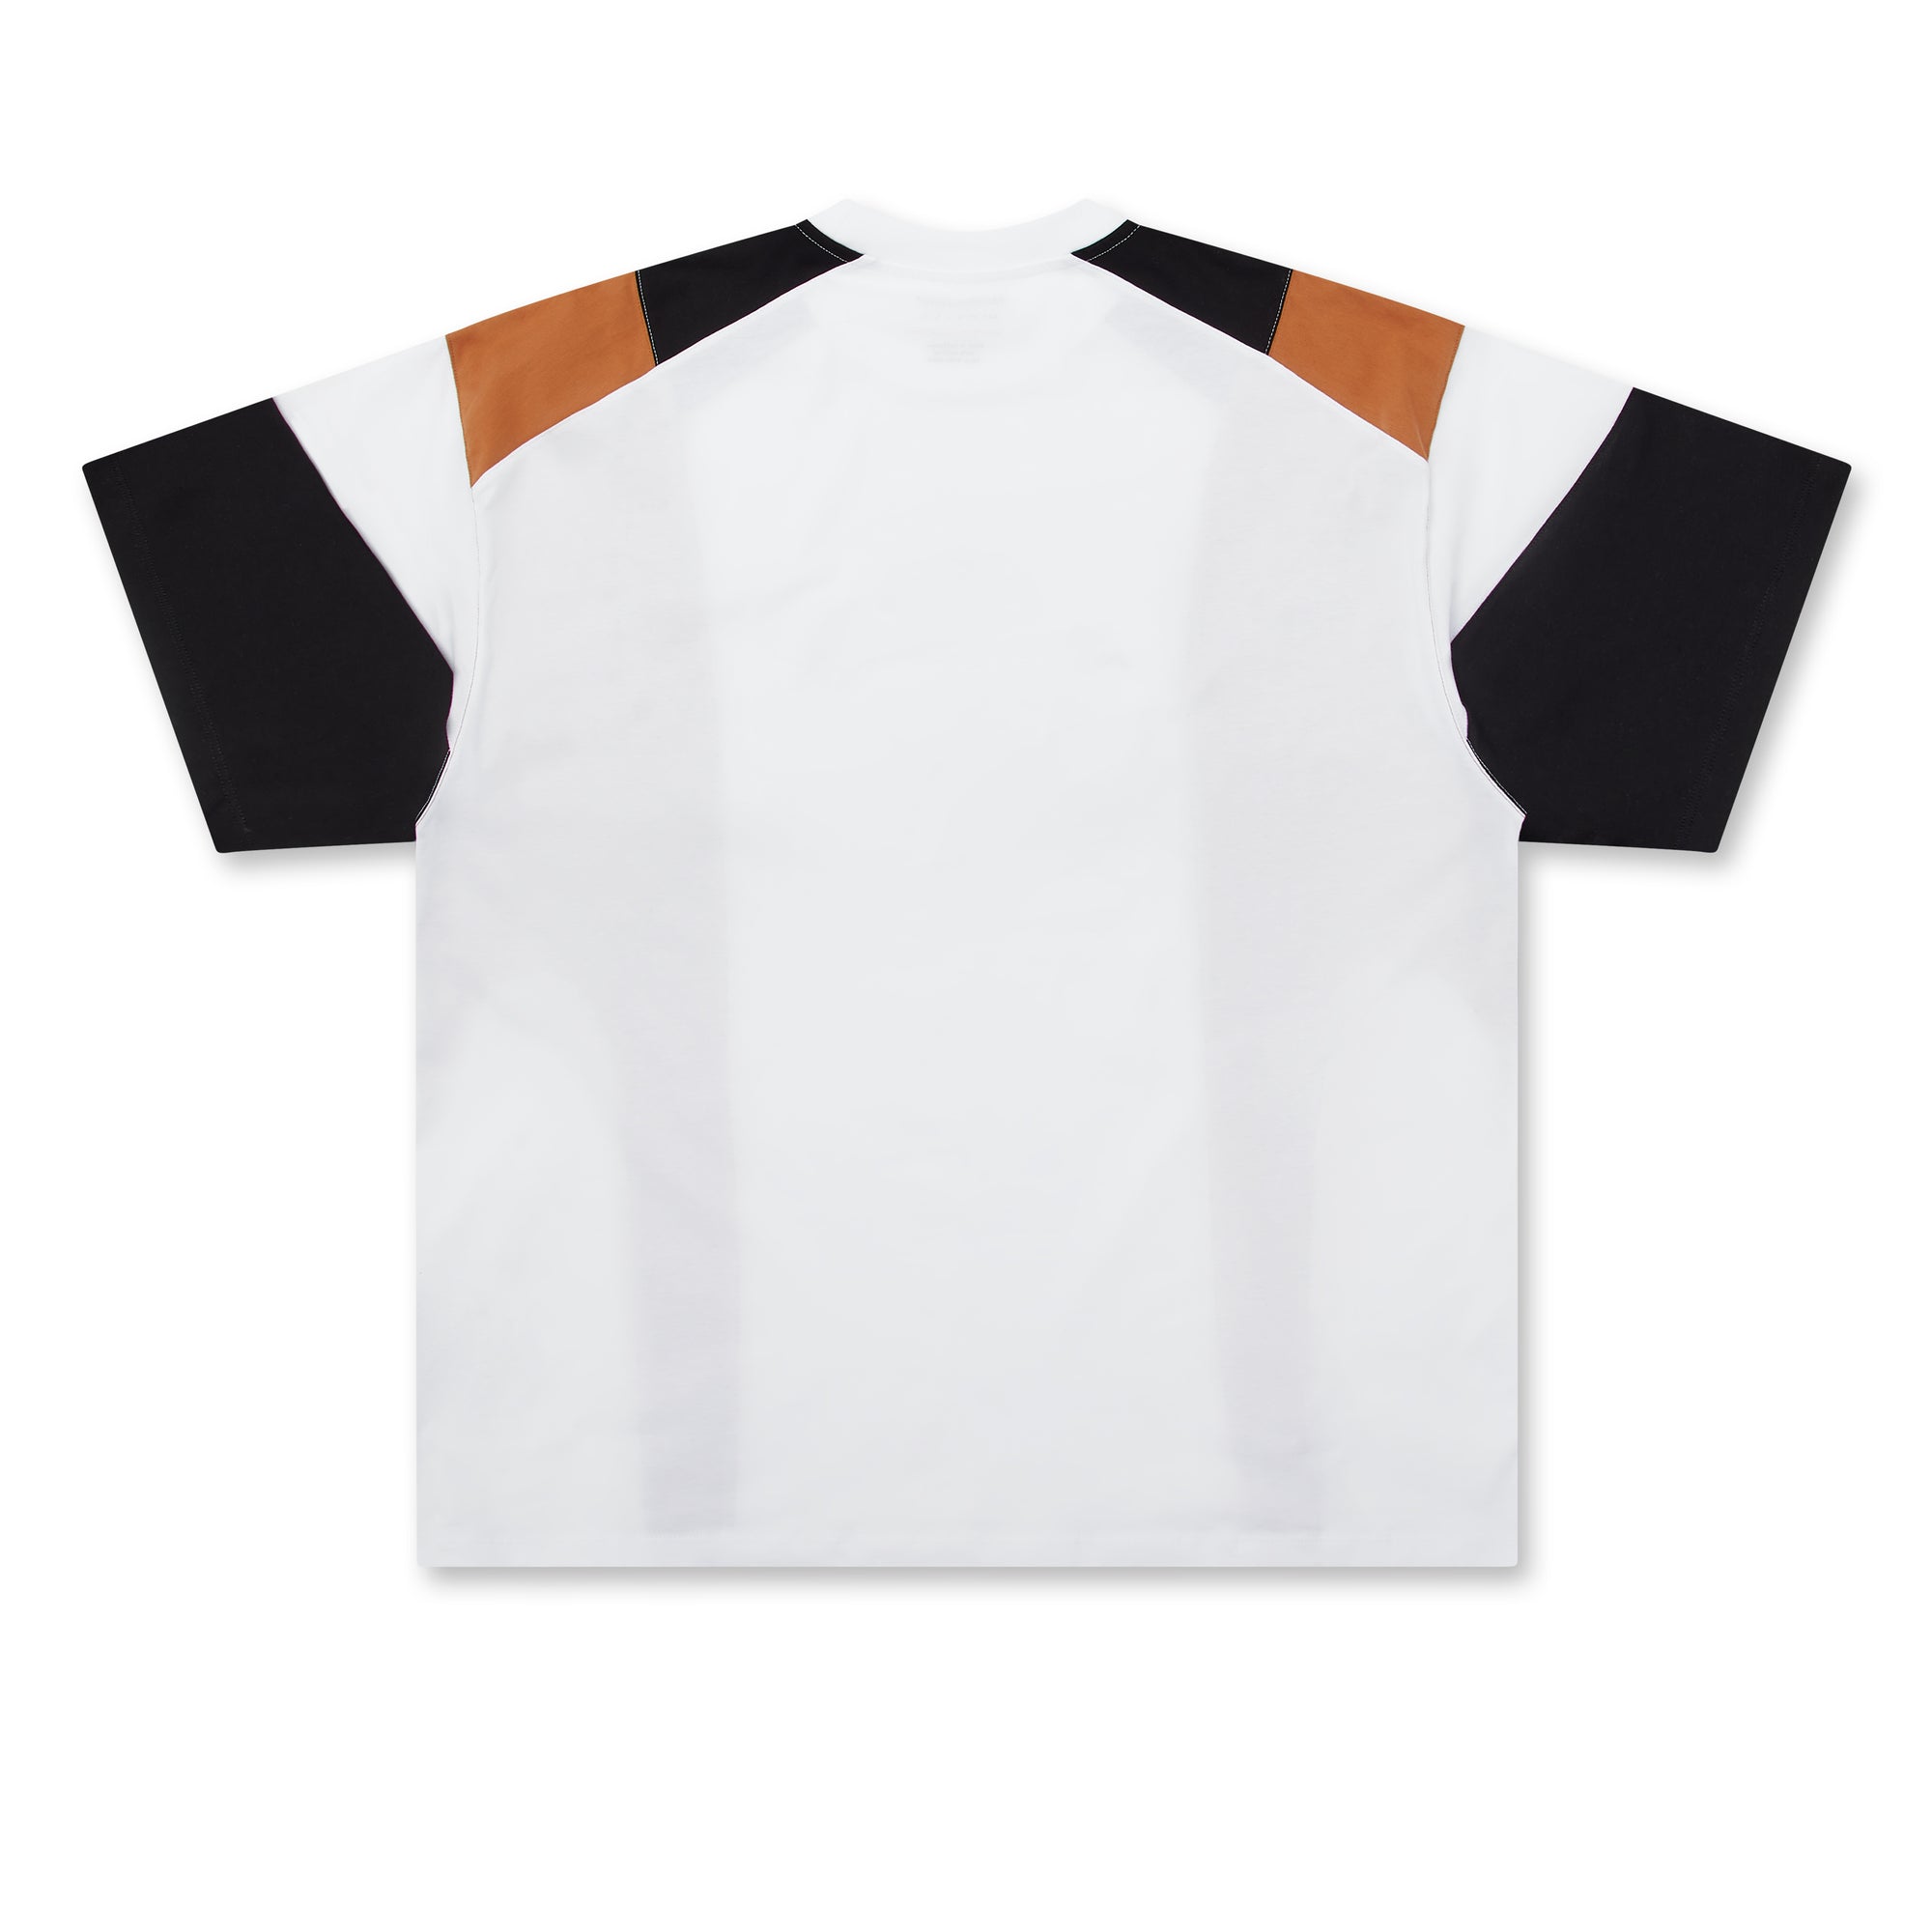 Martine Rose - Men’s Panelled Oversized T-Shirt - (White/Black/Terracotta) view 2